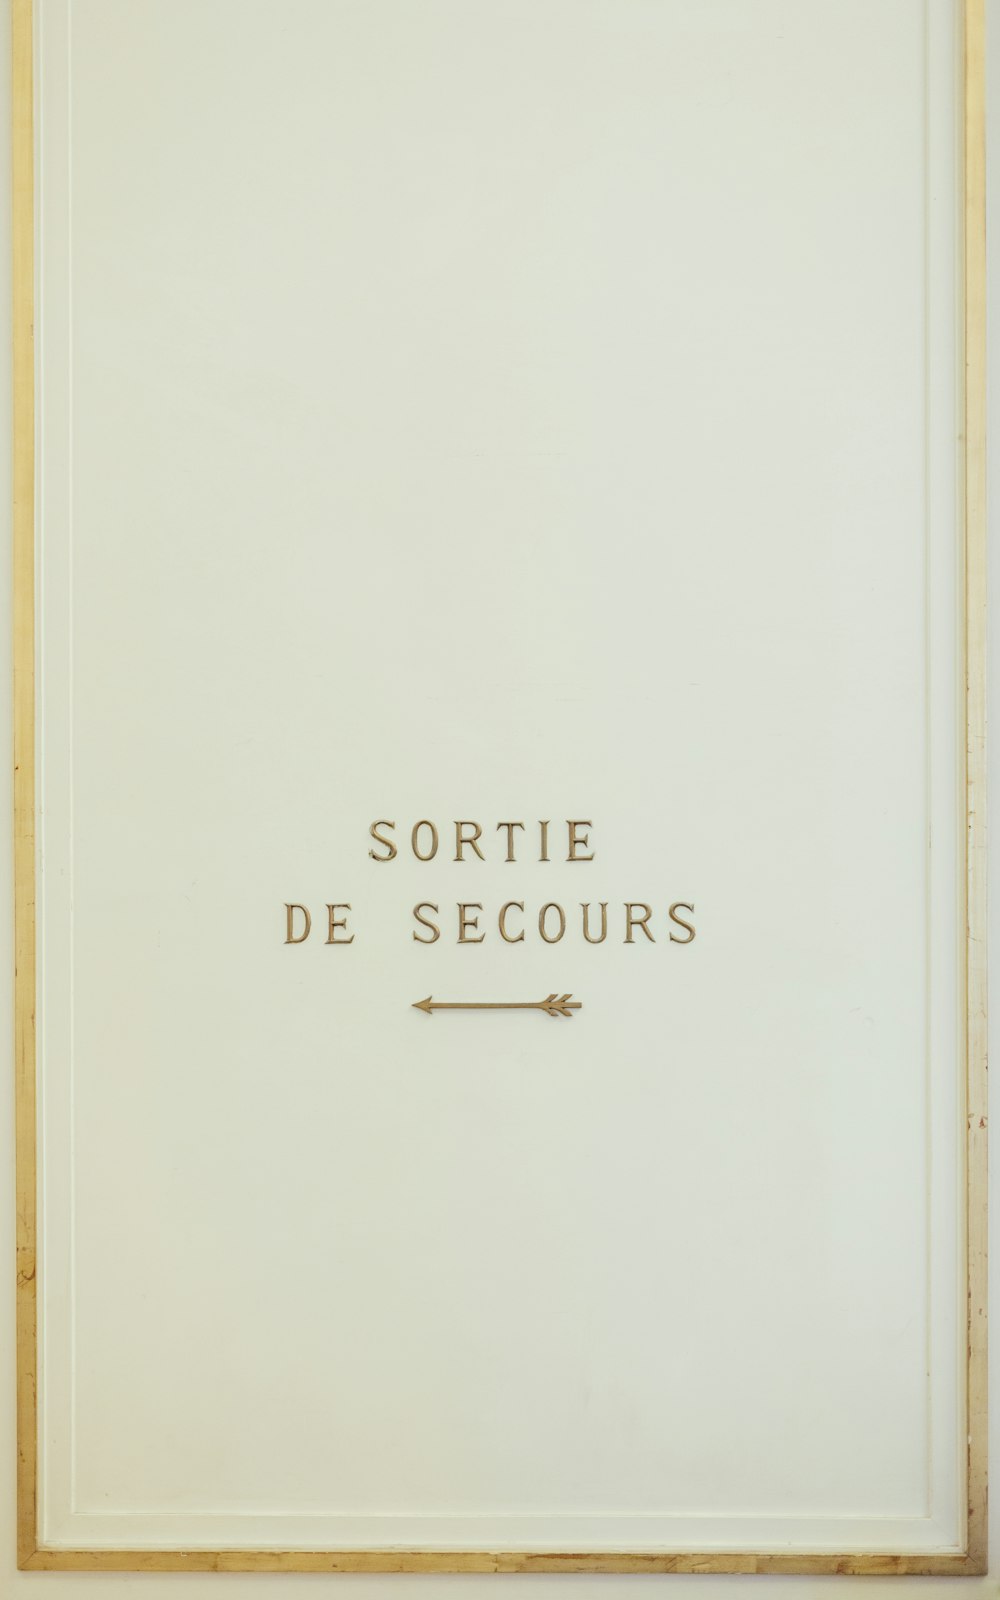 SORTIE DE SECOURS BOOK